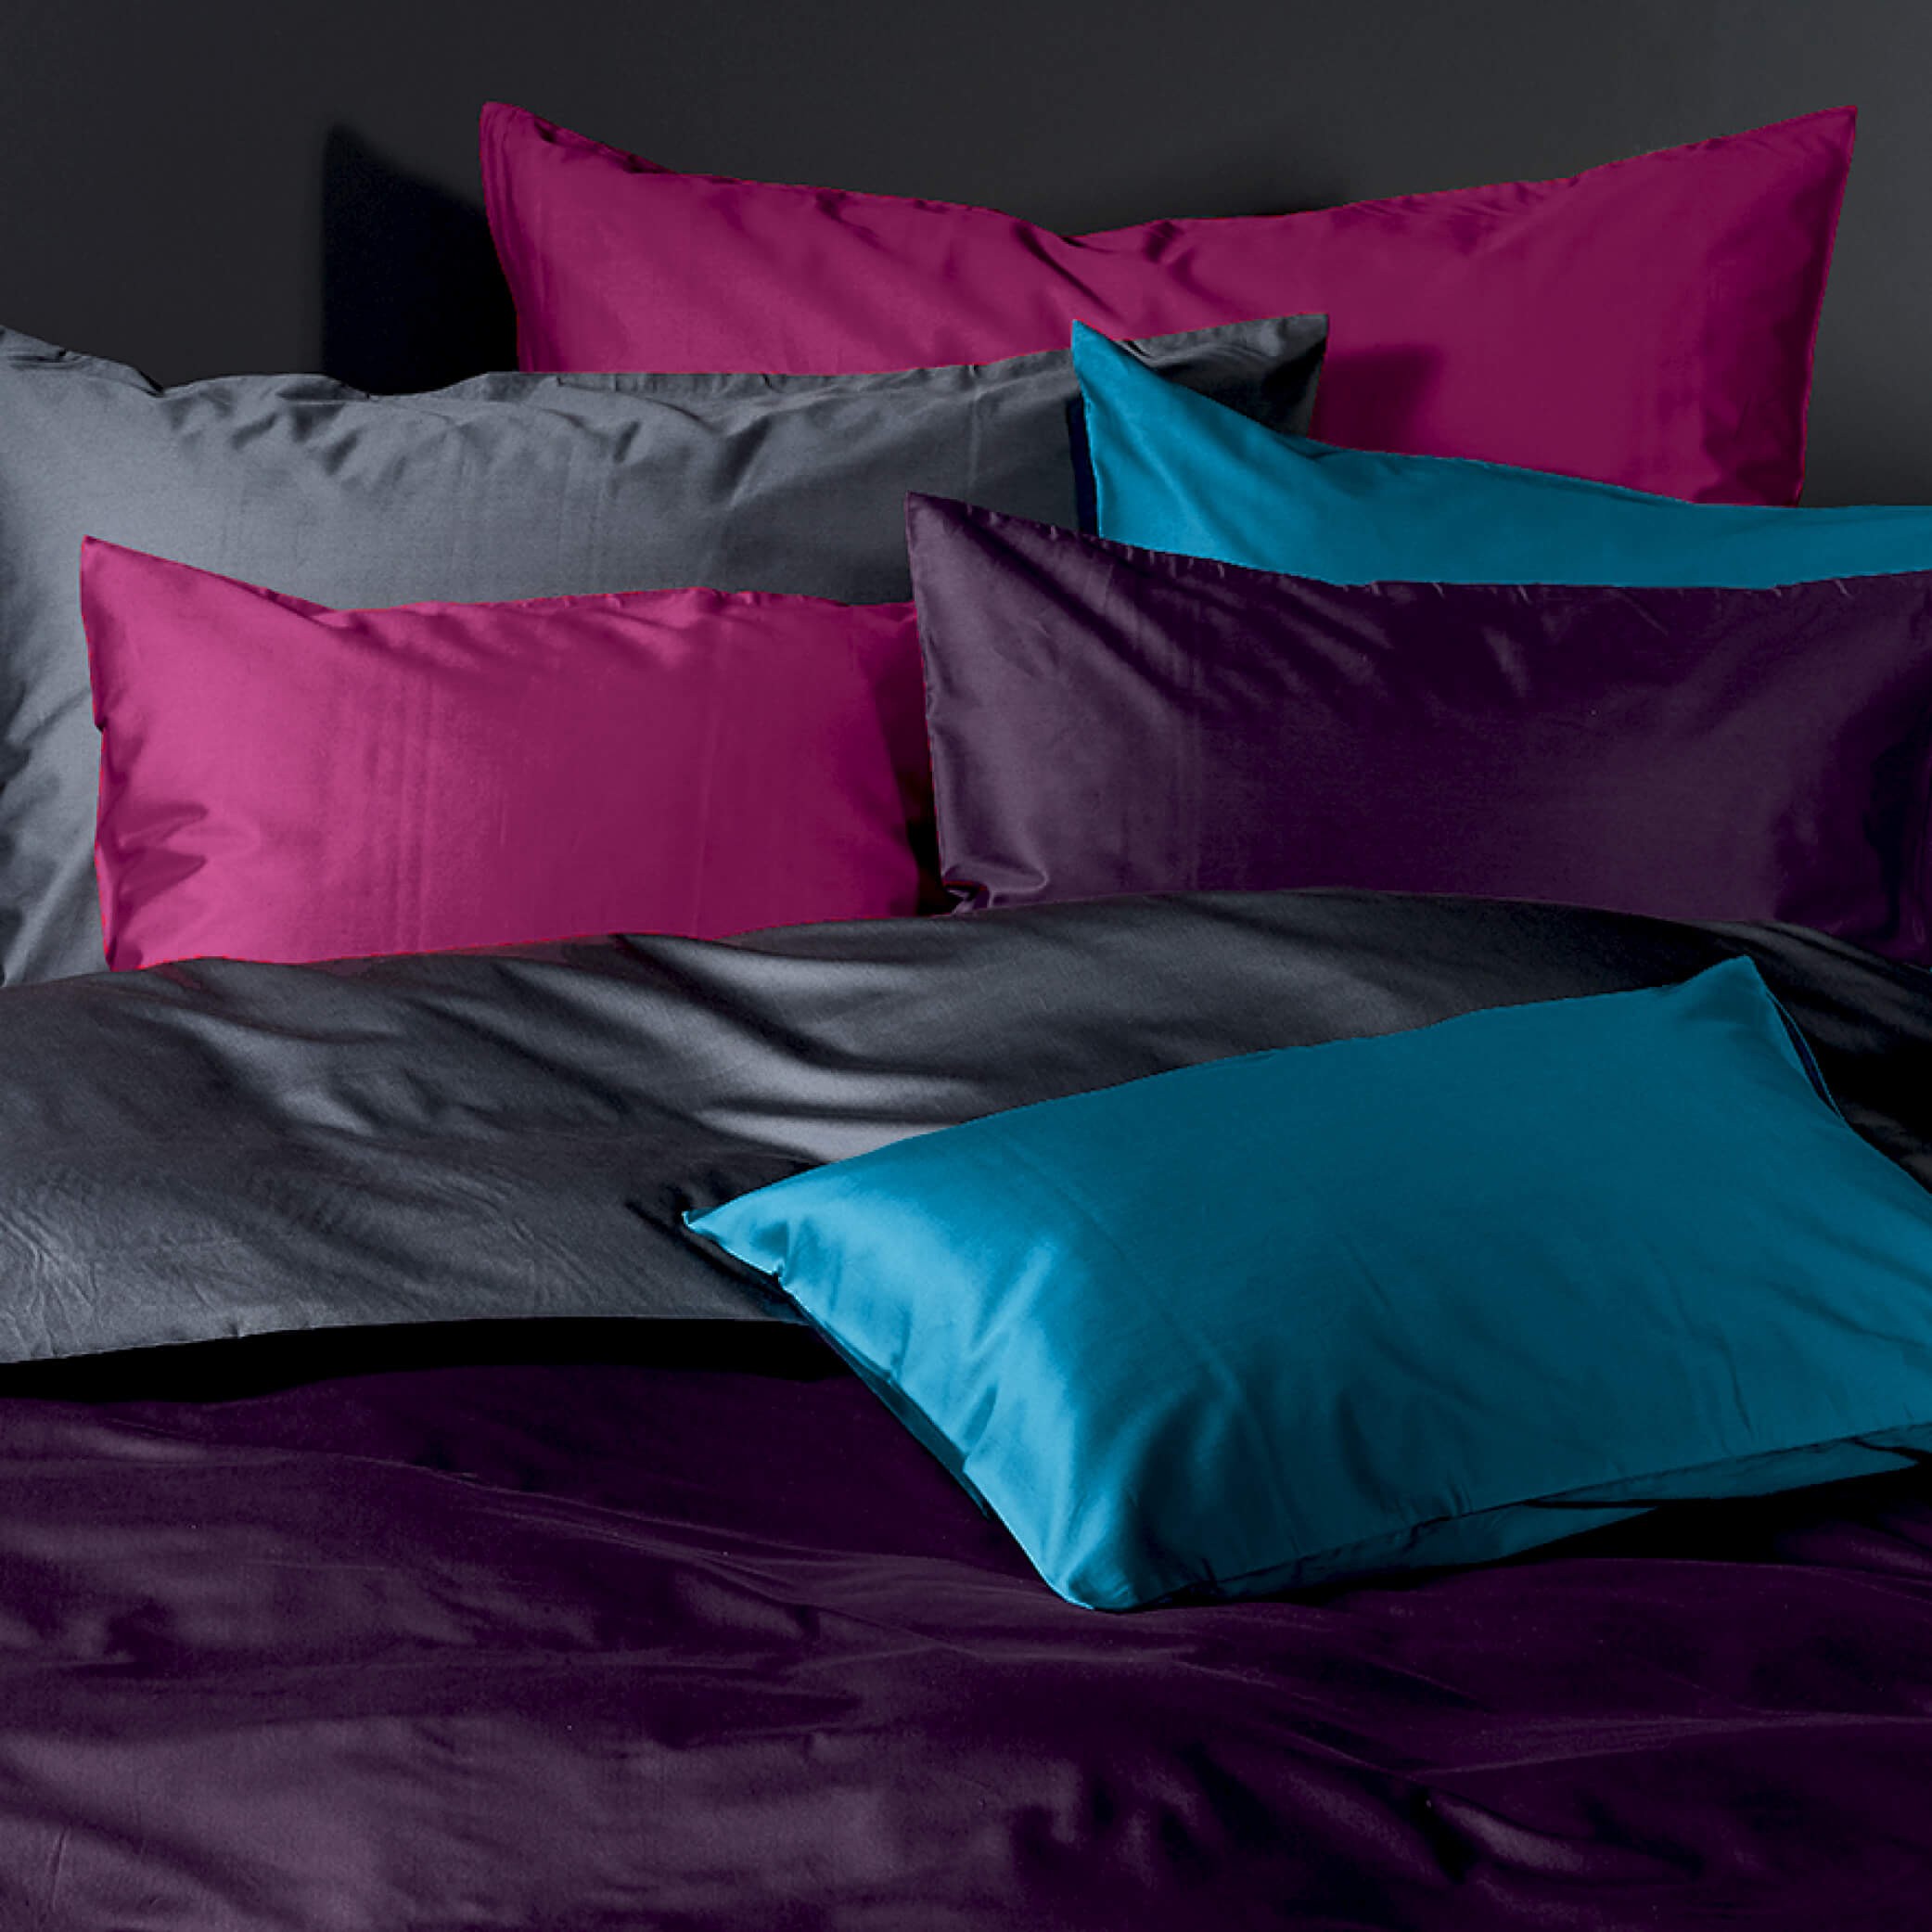 Bettwäsche aus Baumwoll-Satin in eleganten Farben